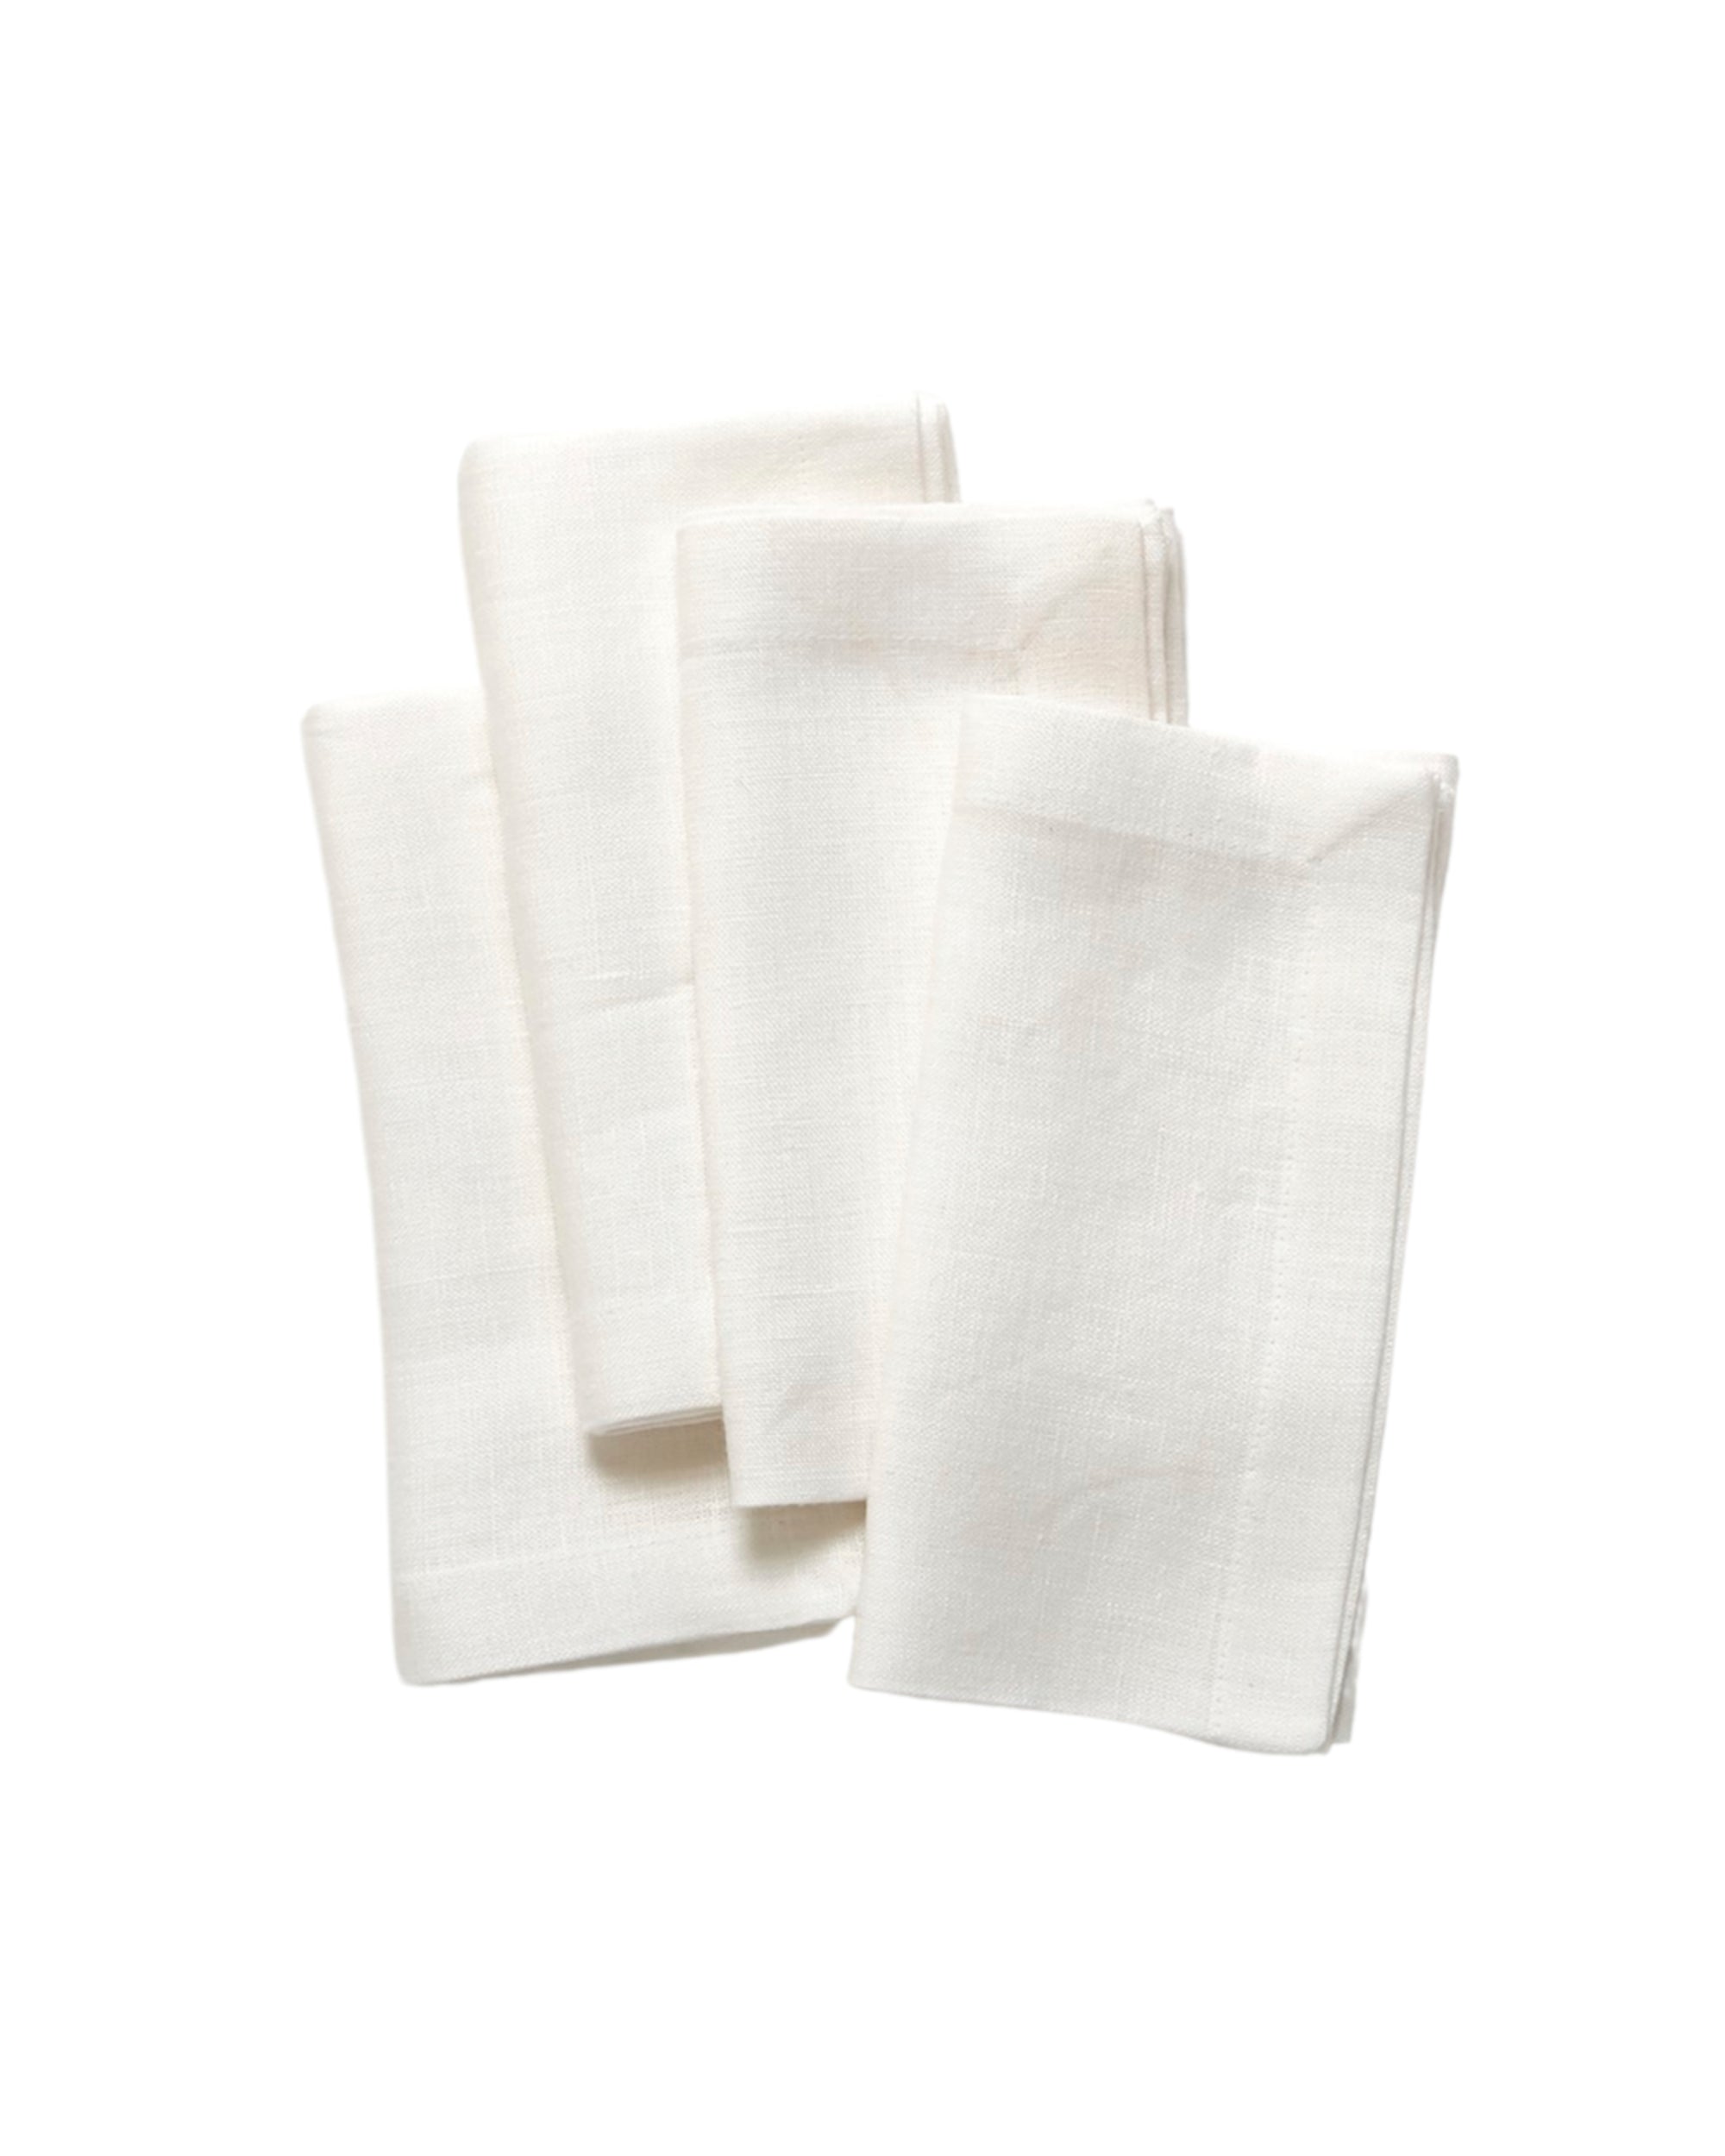 White Linen Dinner Napkins – Set of 4